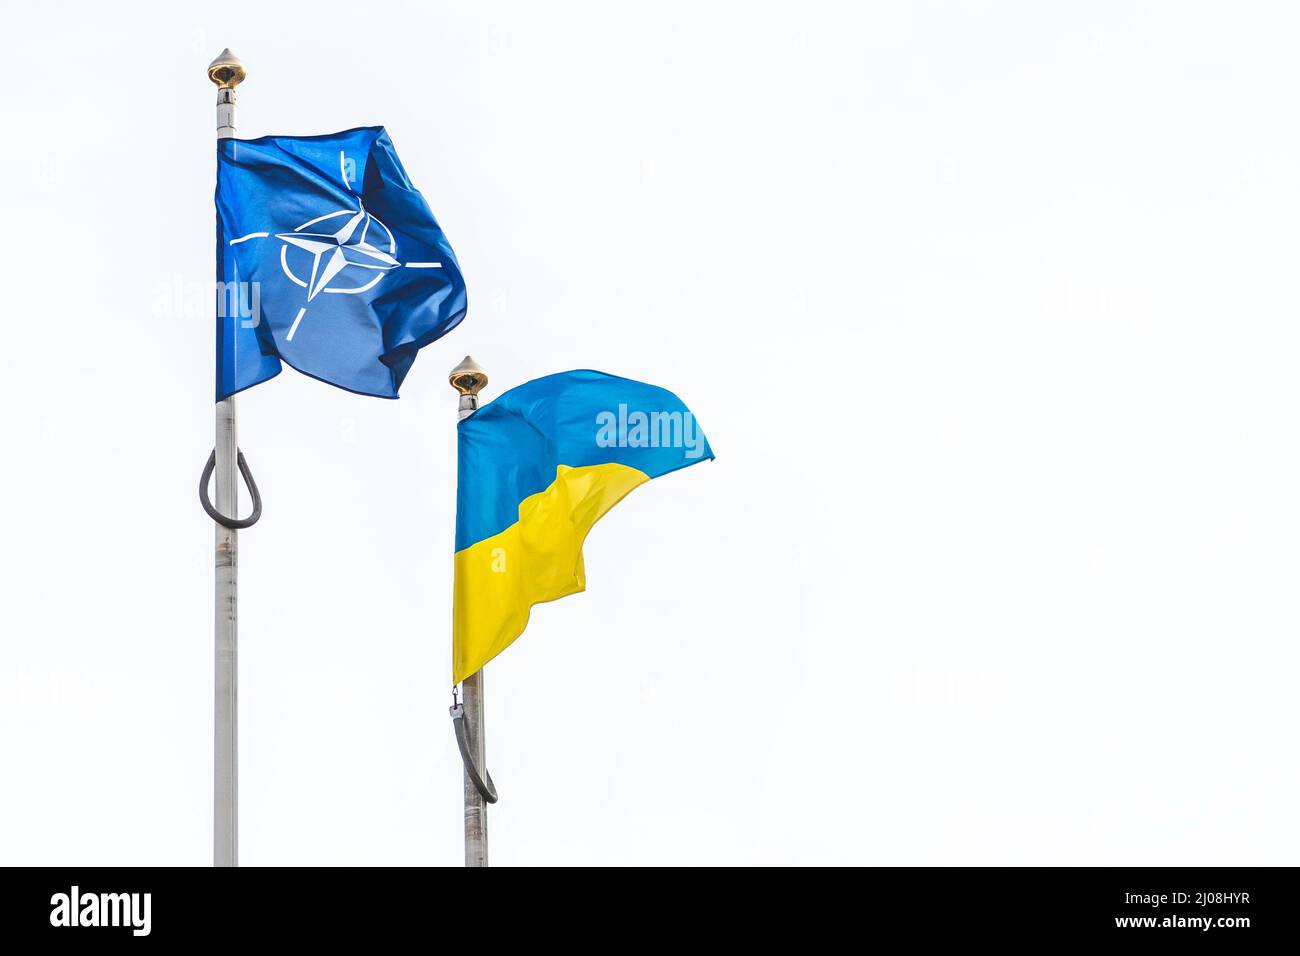 Flagge der NATO, der Organisation des Nordatlantikvertrags und der Ukraine winken am weißen Himmel, Kopierraum Stockfoto